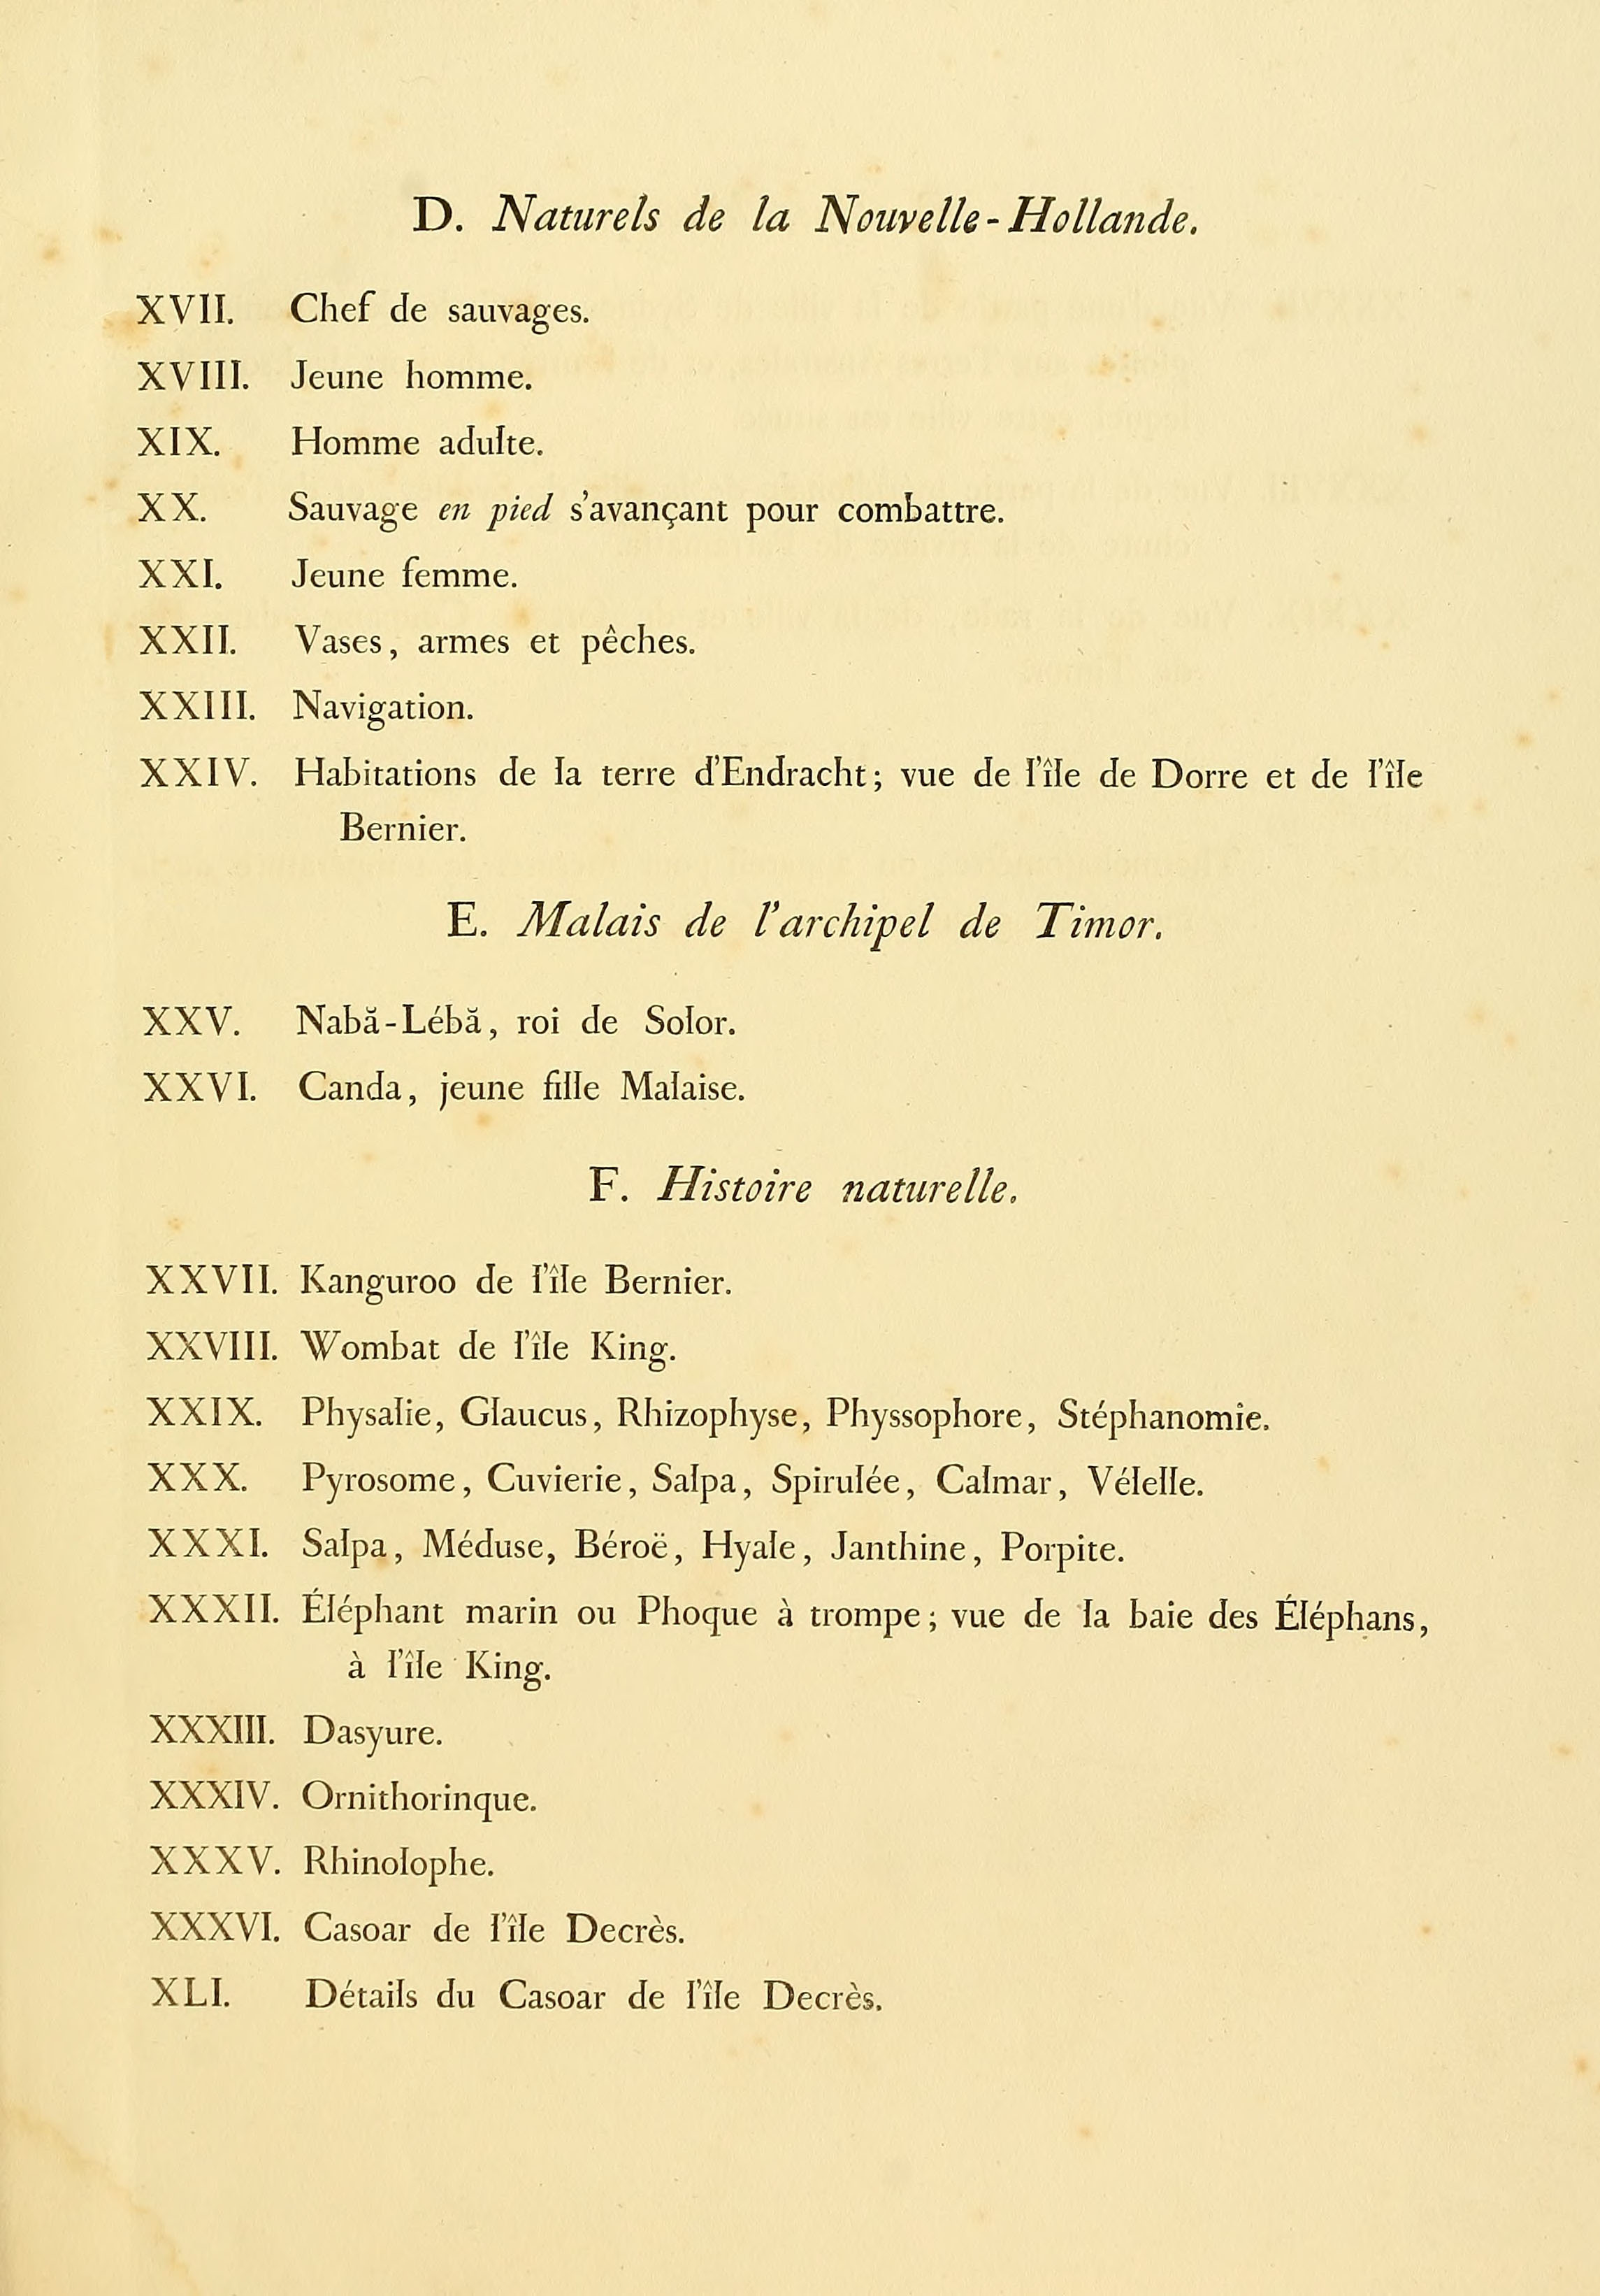 Atlas 1807, Lesueur et Petit, Voyage aux Terres Australes, index 3